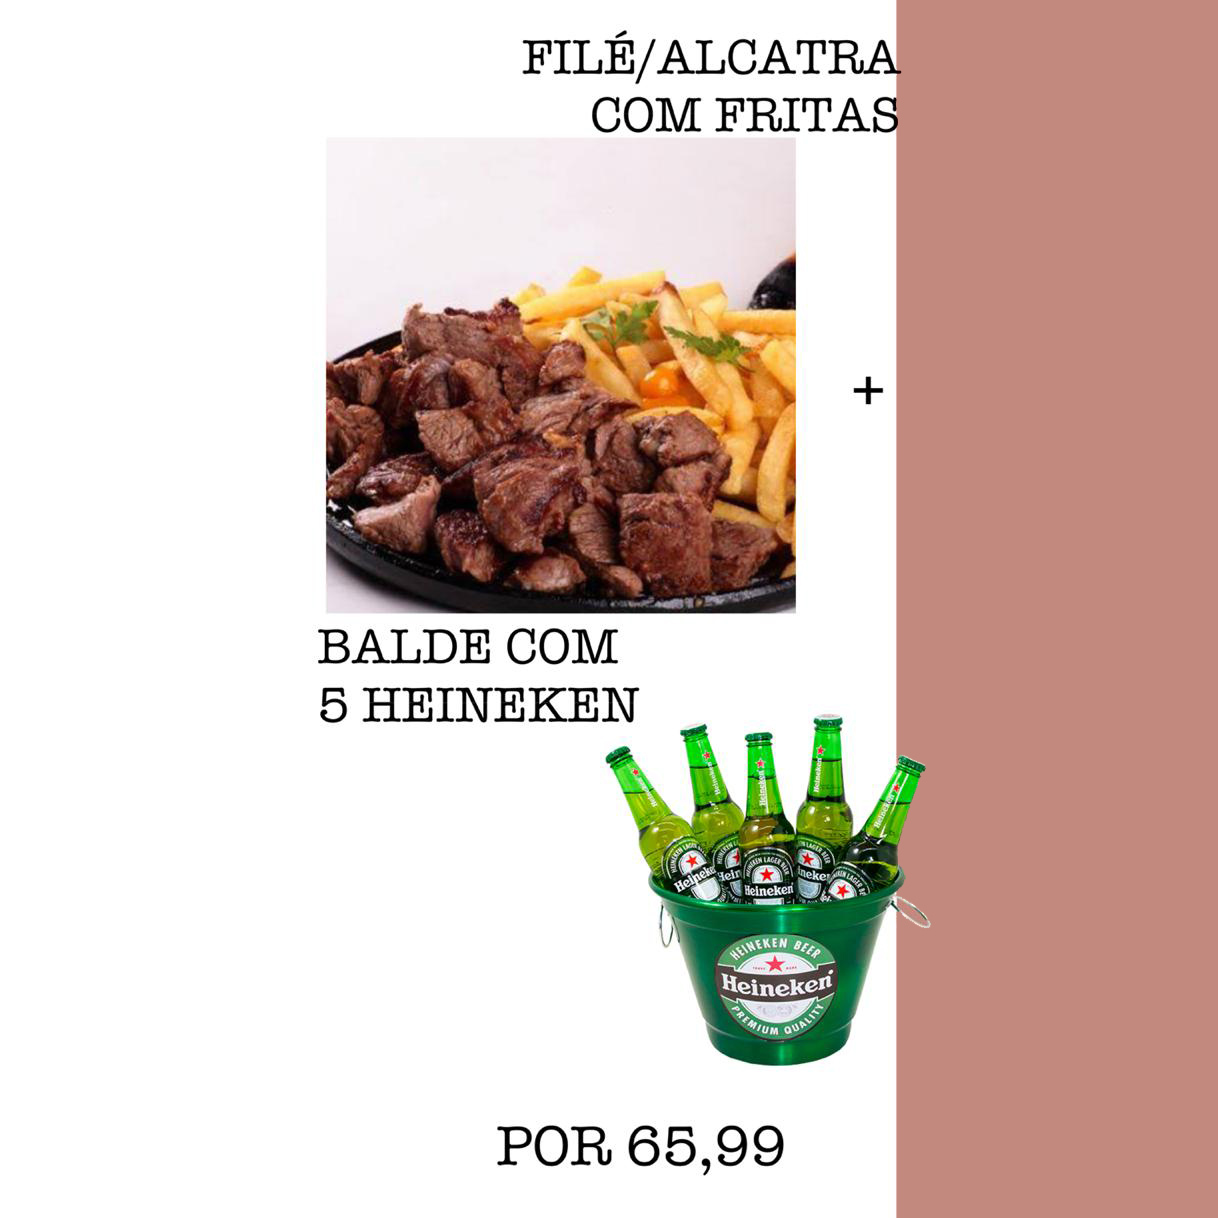 Promoção: Filé de Alcatra com fritas + Balde com 5 Heineken 